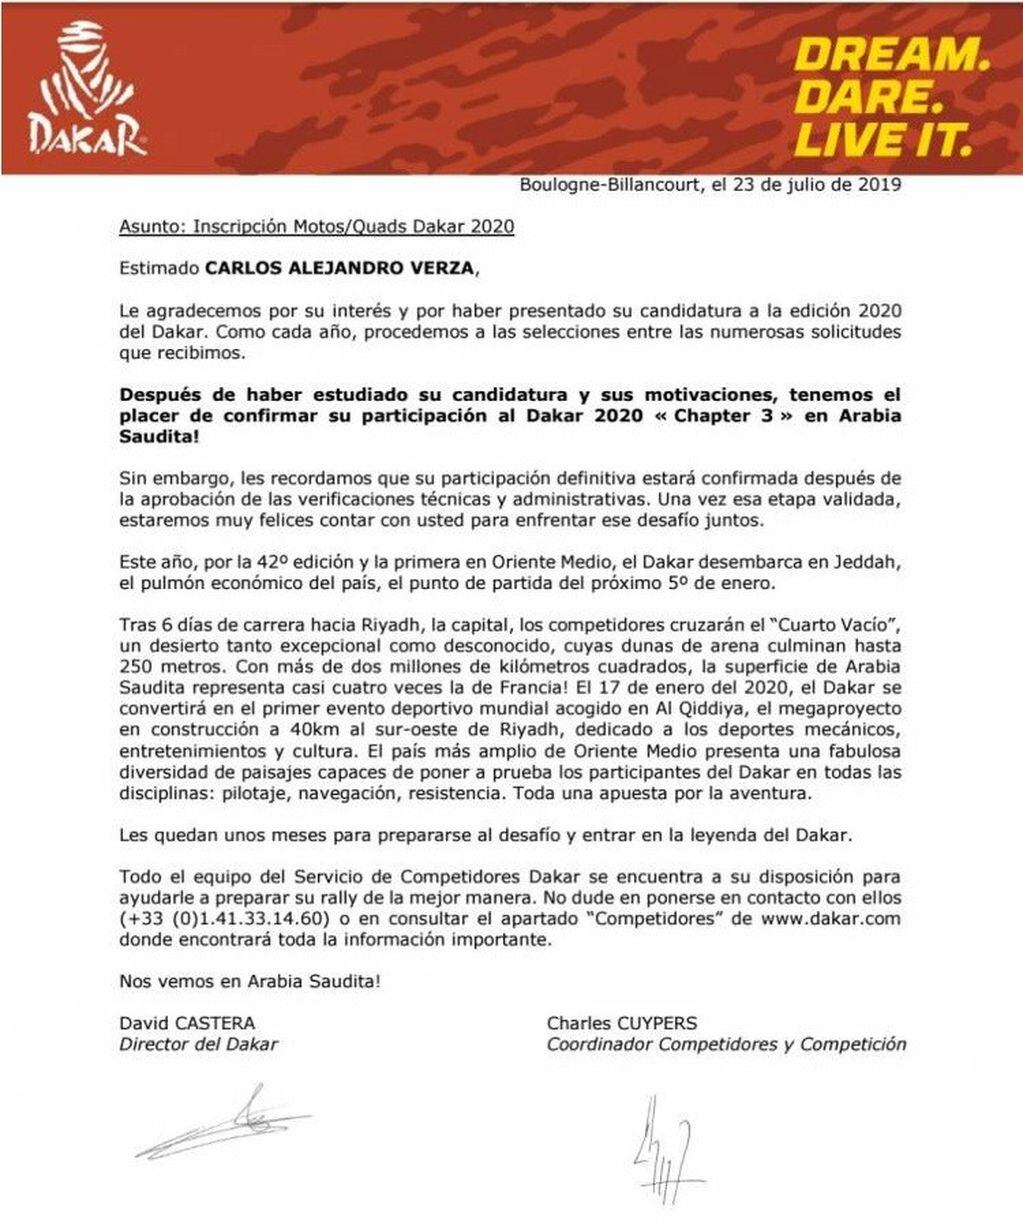 Ayer llegó el comunicado que confirmaba a Carlos Verza como corredor oficial del Dakar 2020.